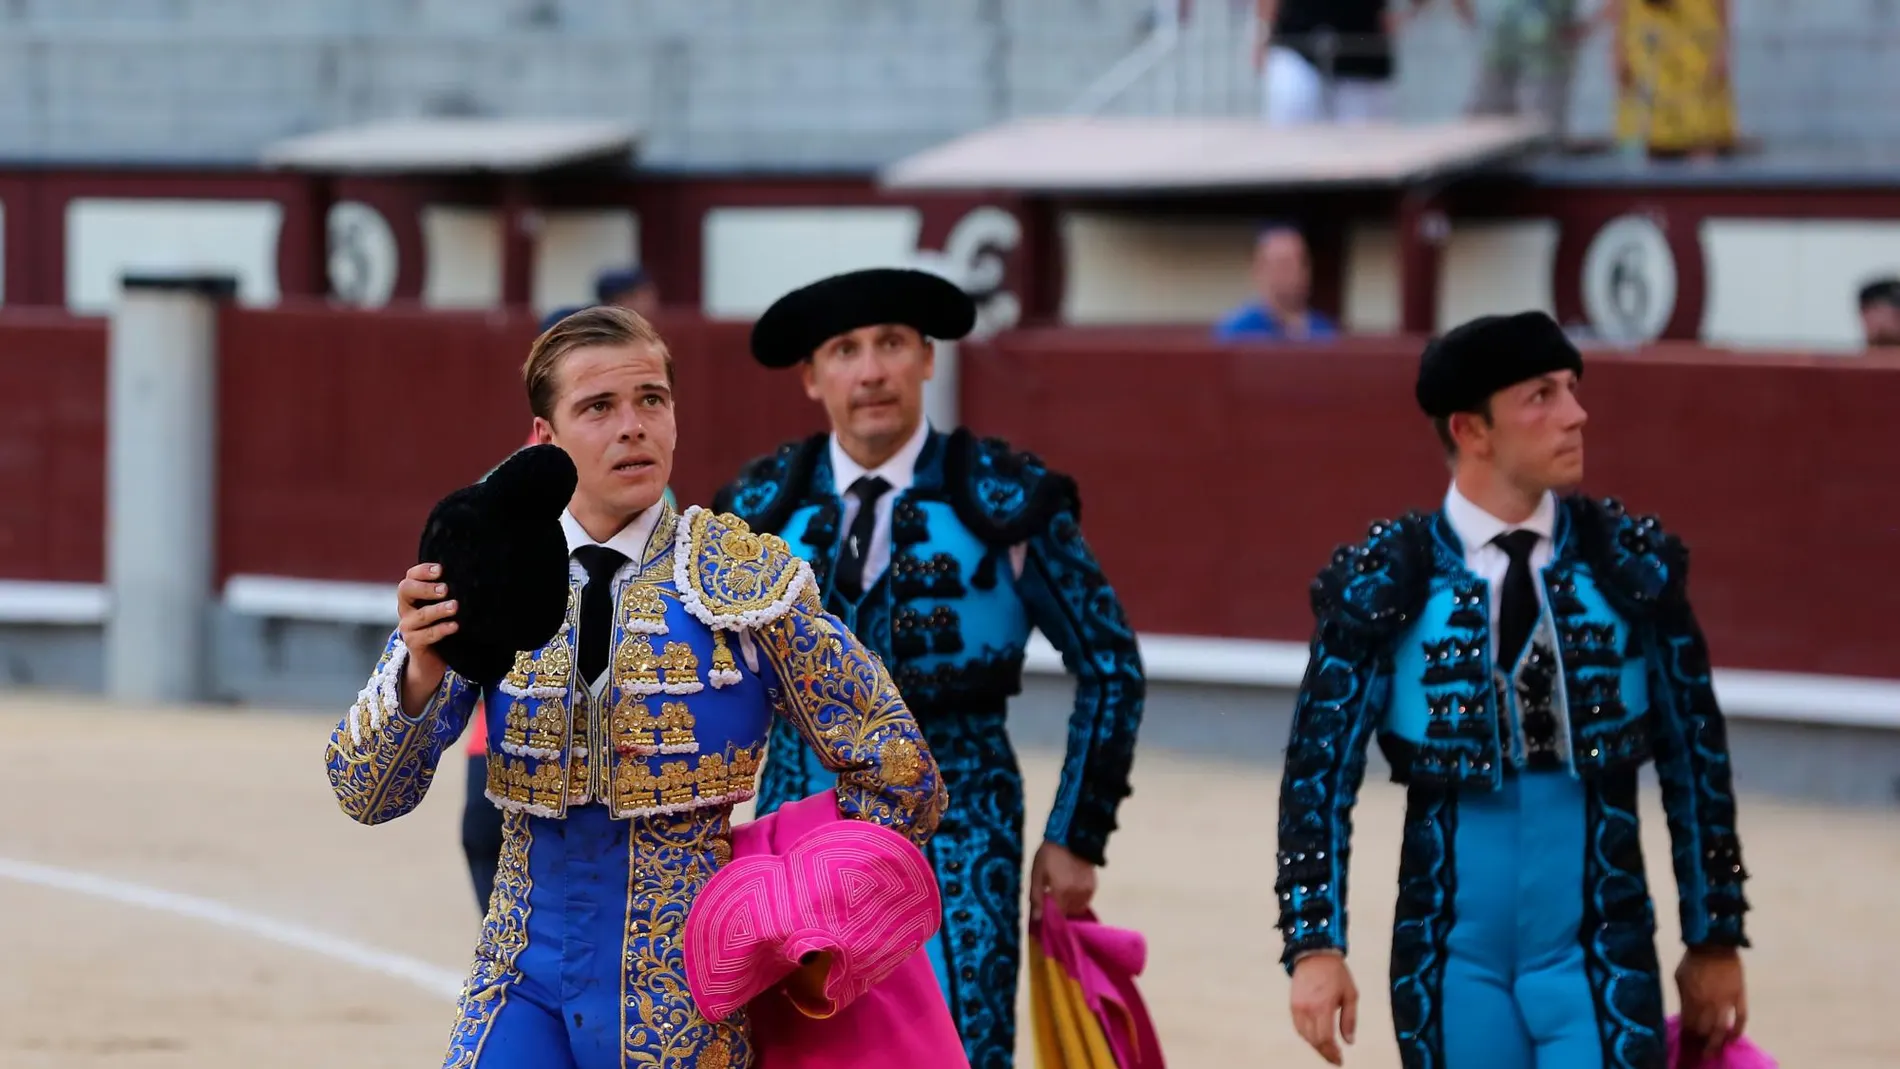 Javier Cortés da una vuelta al ruedo en un festejo en Las Ventas del año pasado (Foto: Cristina Bejarano)